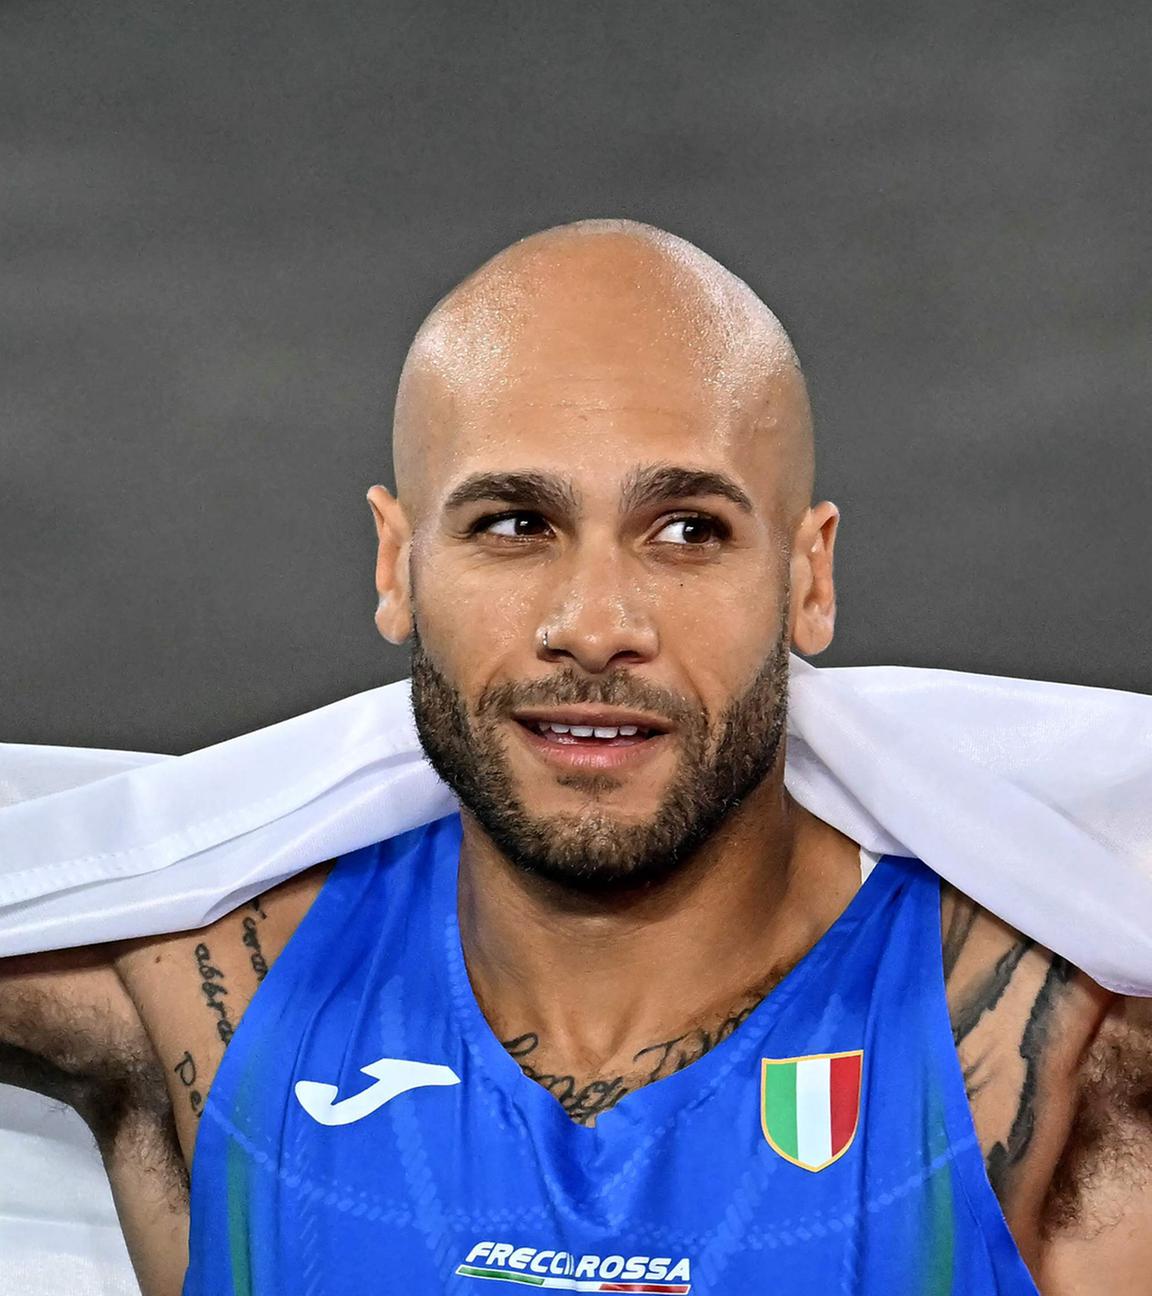 Der italienische Leichtathlet Lamont Marcell Jacobs jubelt nach dem Gewinn der Goldmedaille.